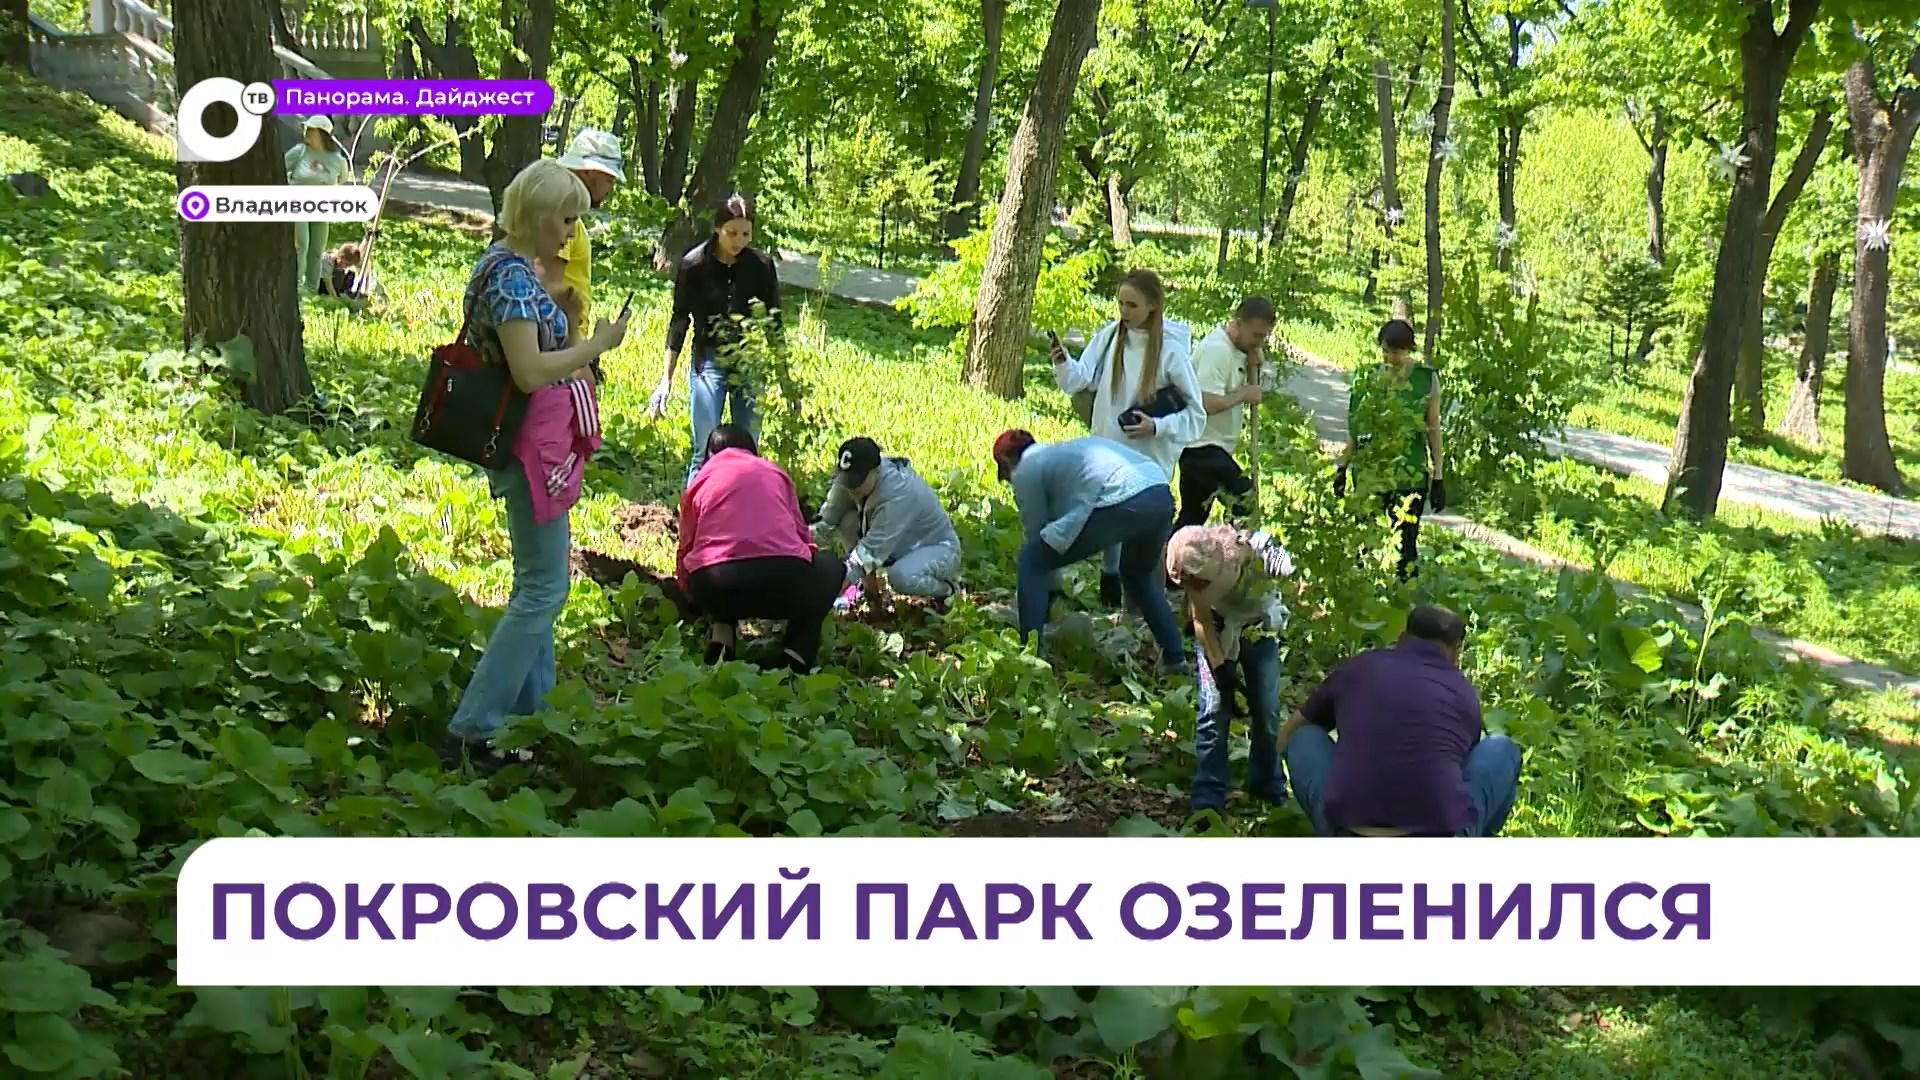 День предпринимательства отметили необычным событием в Покровском парке Владивостока